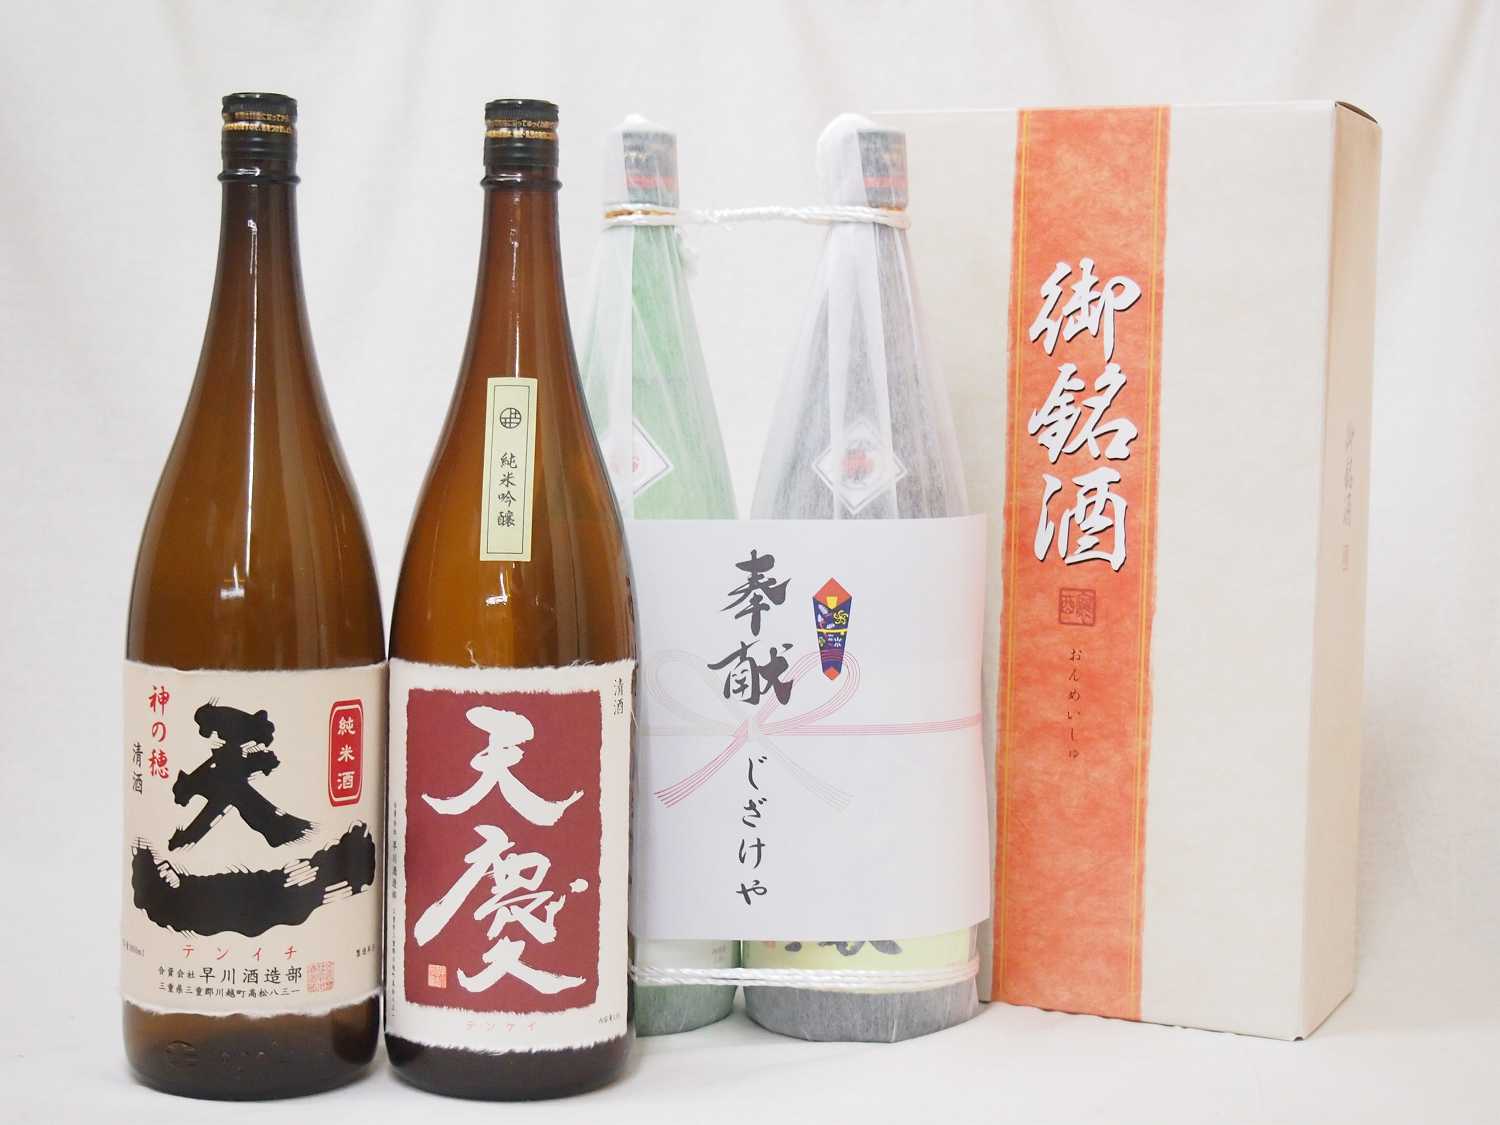 地鎮祭用奉献酒 地鎮祭の日本酒2本縛りお酒セット(早川酒造部